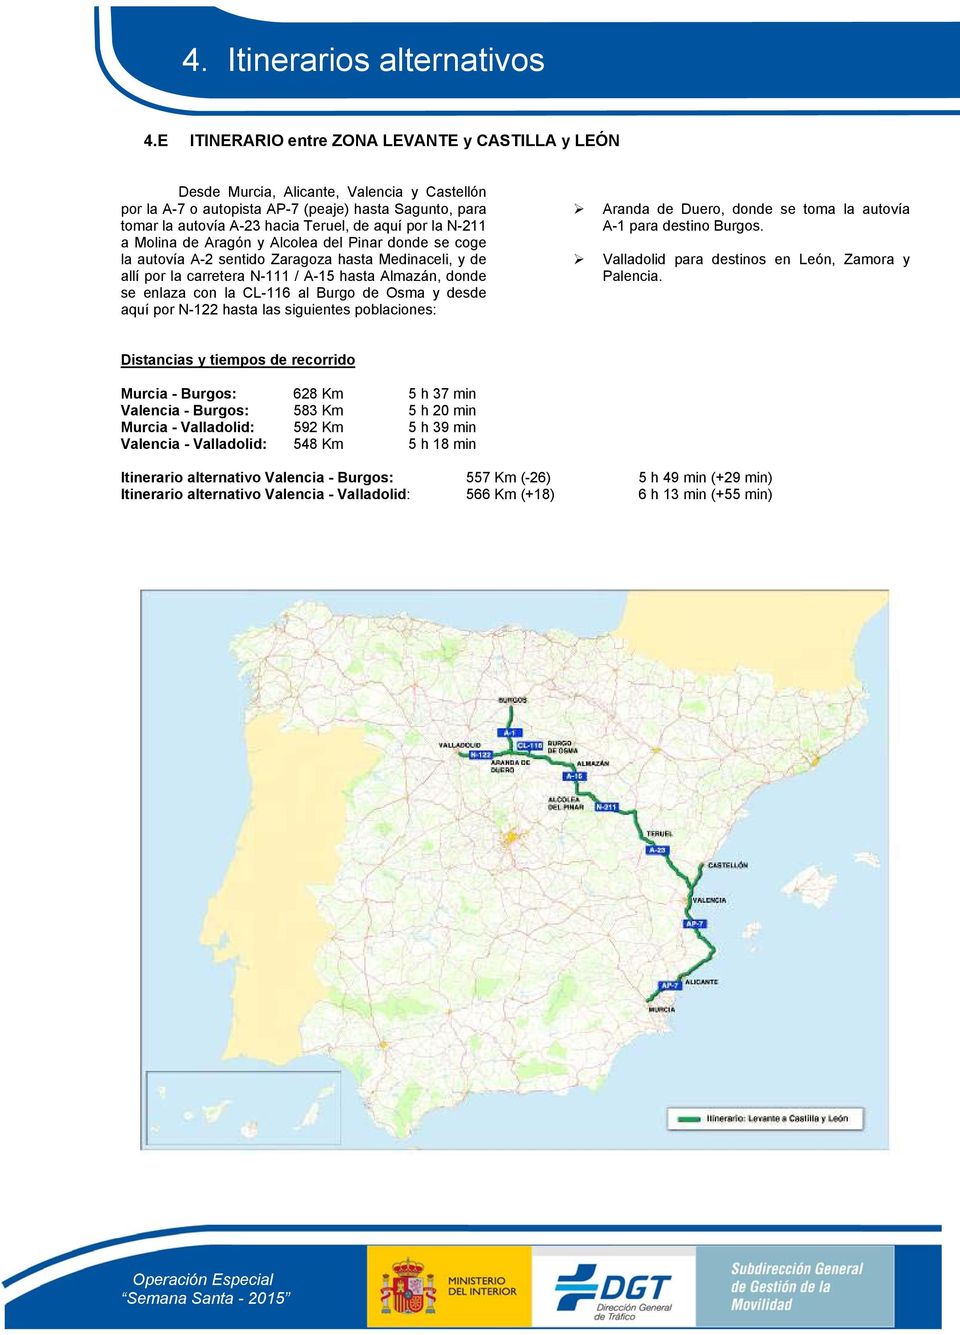 CL-116 al Burgo de Osma y desde aquí por N-122 hasta las siguientes poblaciones: Aranda de Duero, donde se toma la autovía A-1 para destino Burgos. Valladolid para destinos en León, Zamora y Palencia.